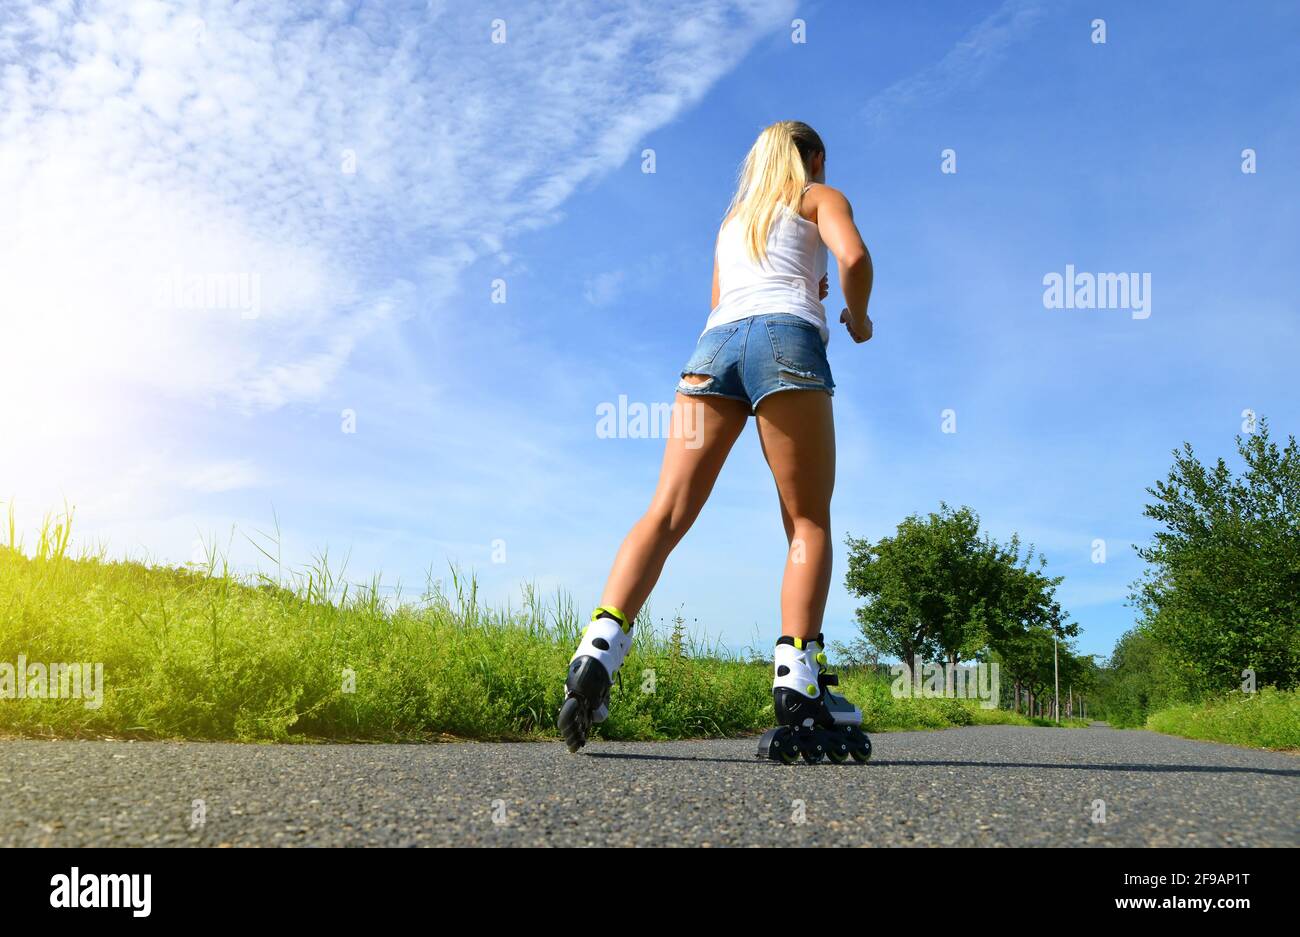 Adolescente en patines en el verano. Patinaje en línea en la carretera. Foto de stock